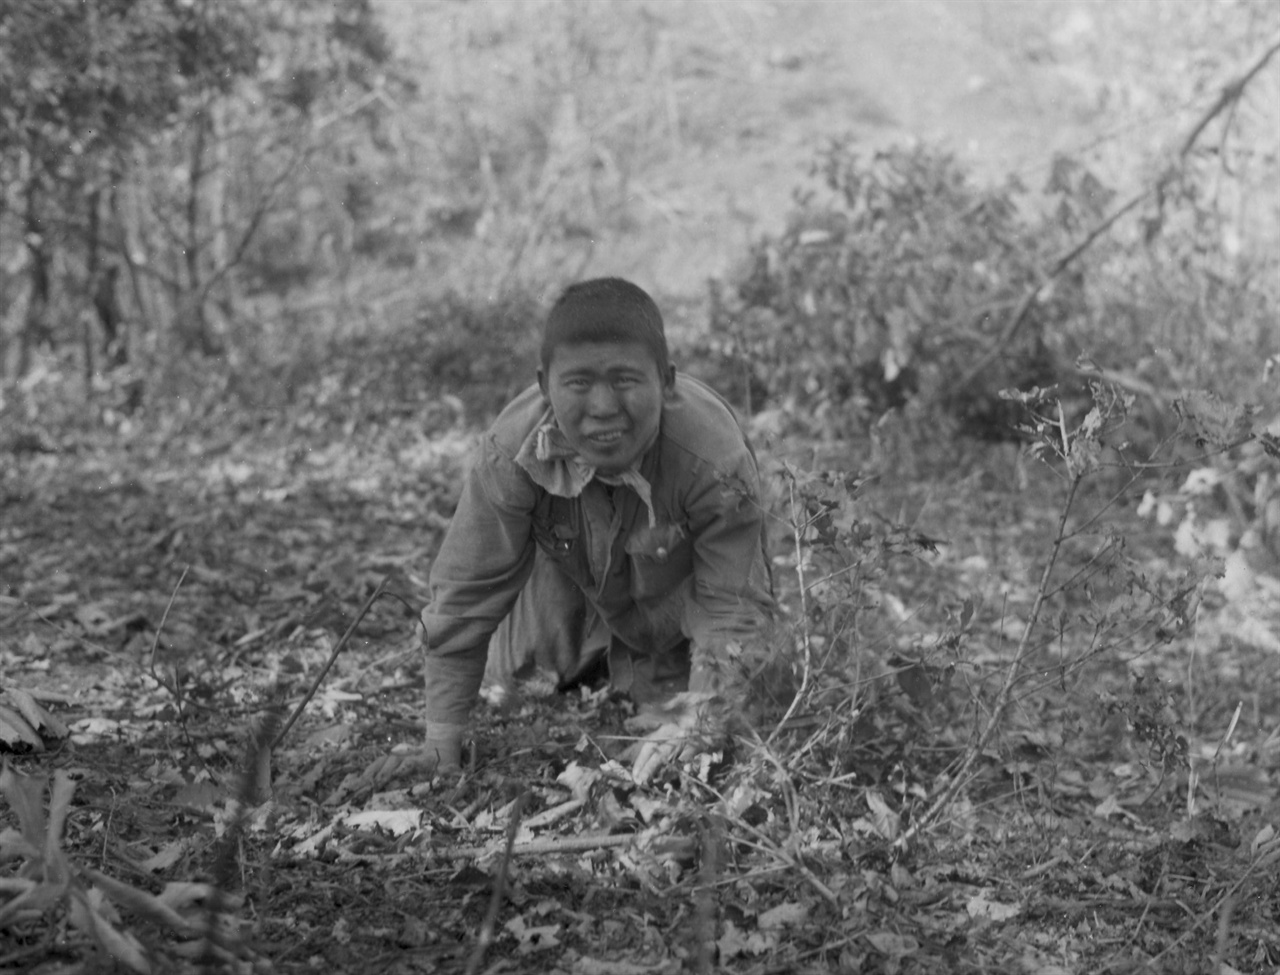 1951. 9. 20. 수플 속에 숨어있던 인민군 한 병사가 총구 앞에 짐승처럼 기어나오면서 투항하고 있다.